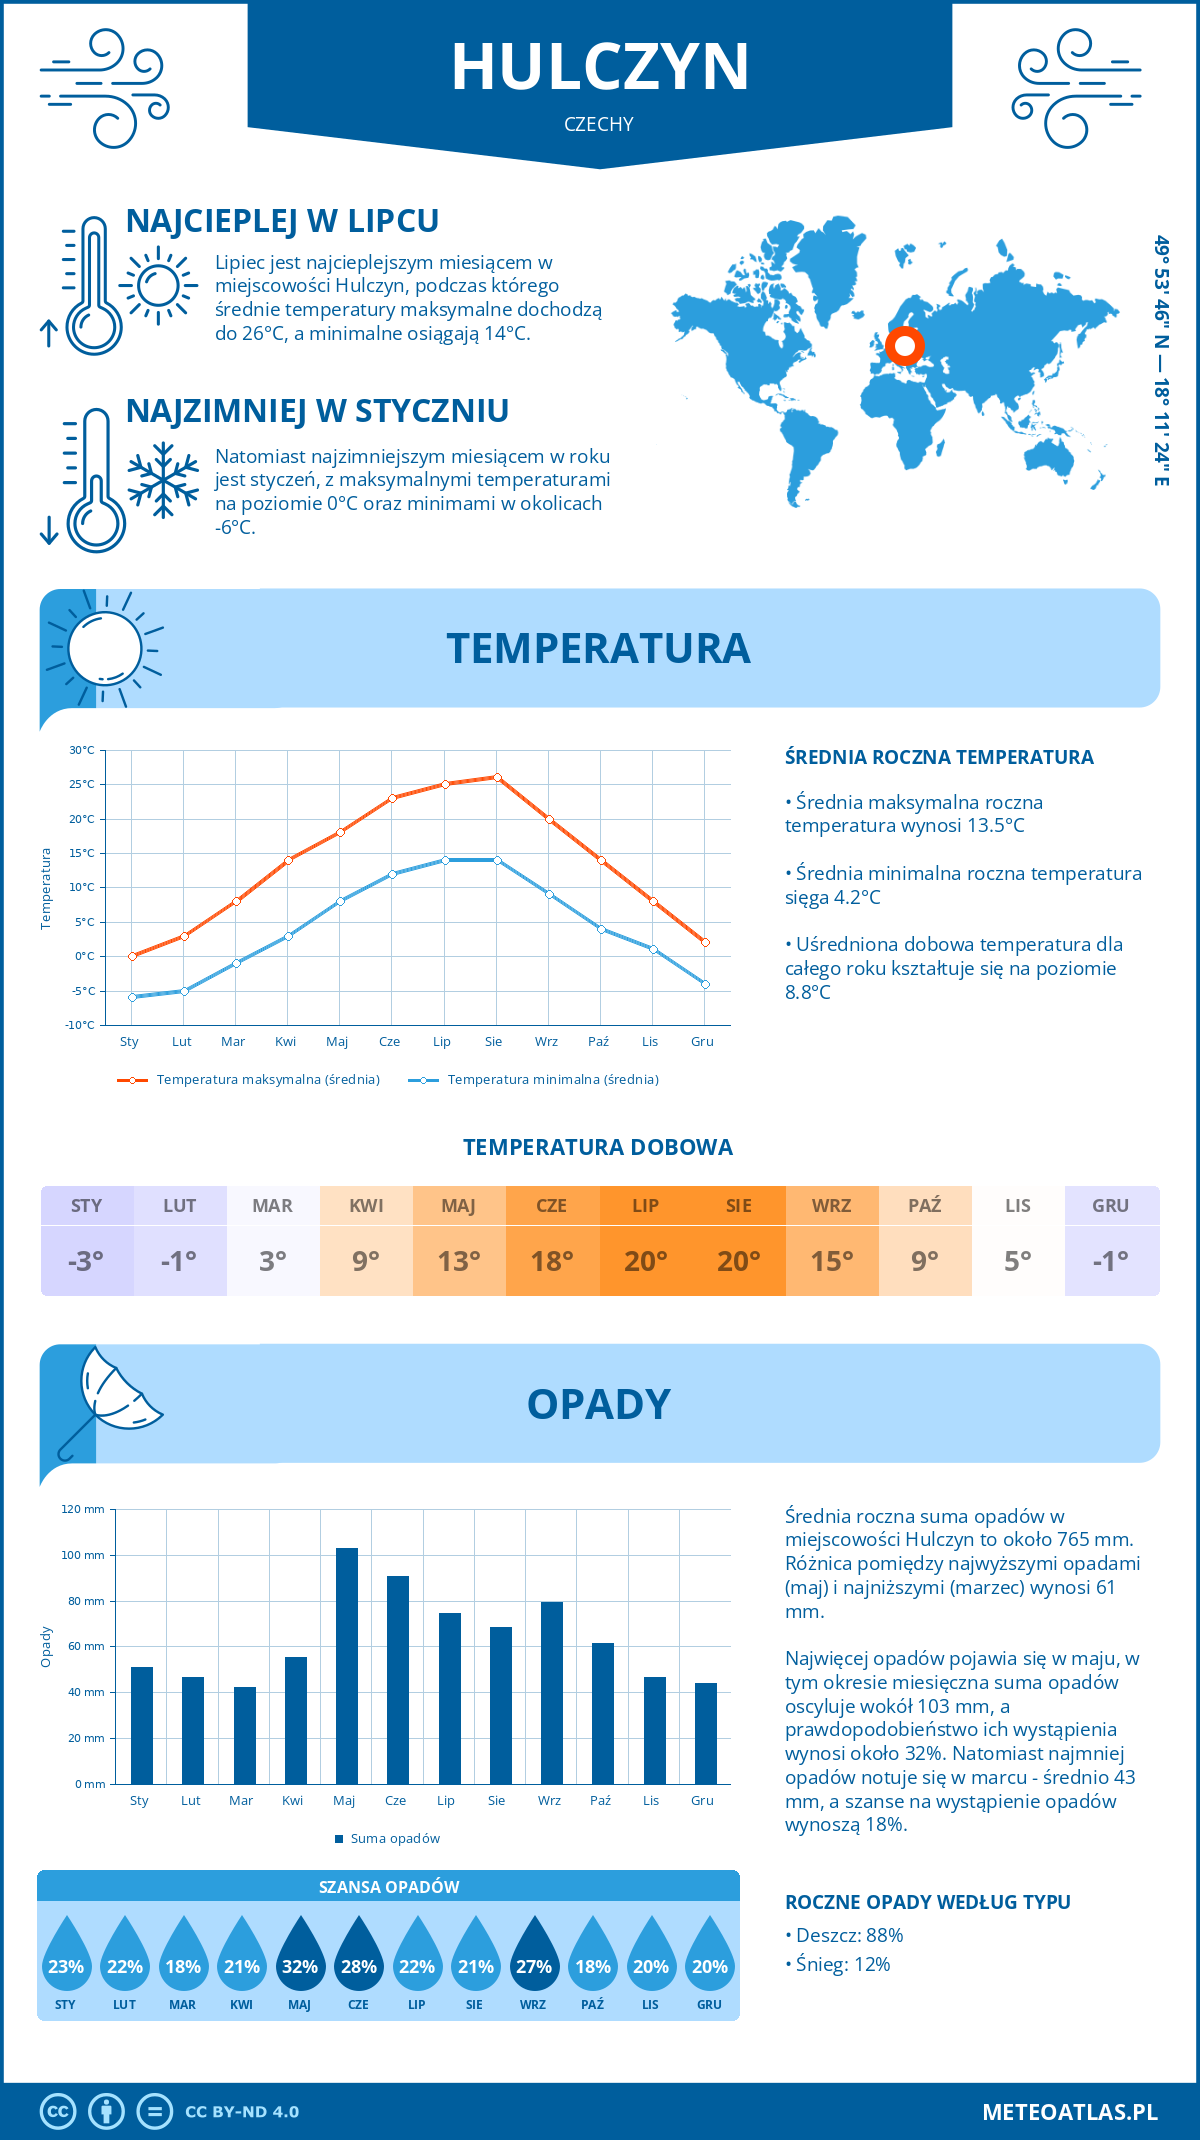 Pogoda Hulczyn (Czechy). Temperatura oraz opady.